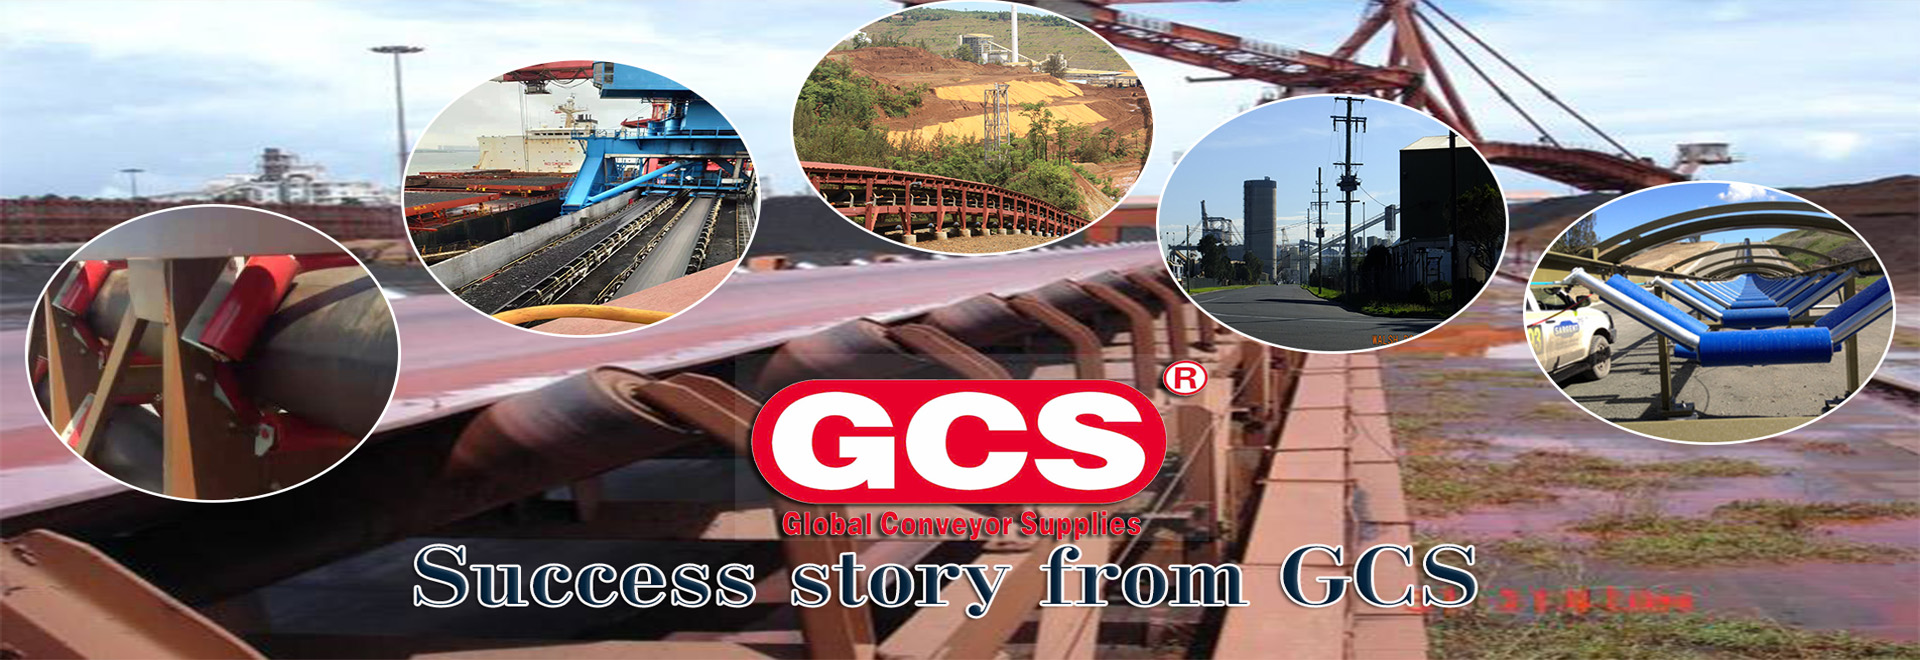 GCS'S Success Stories